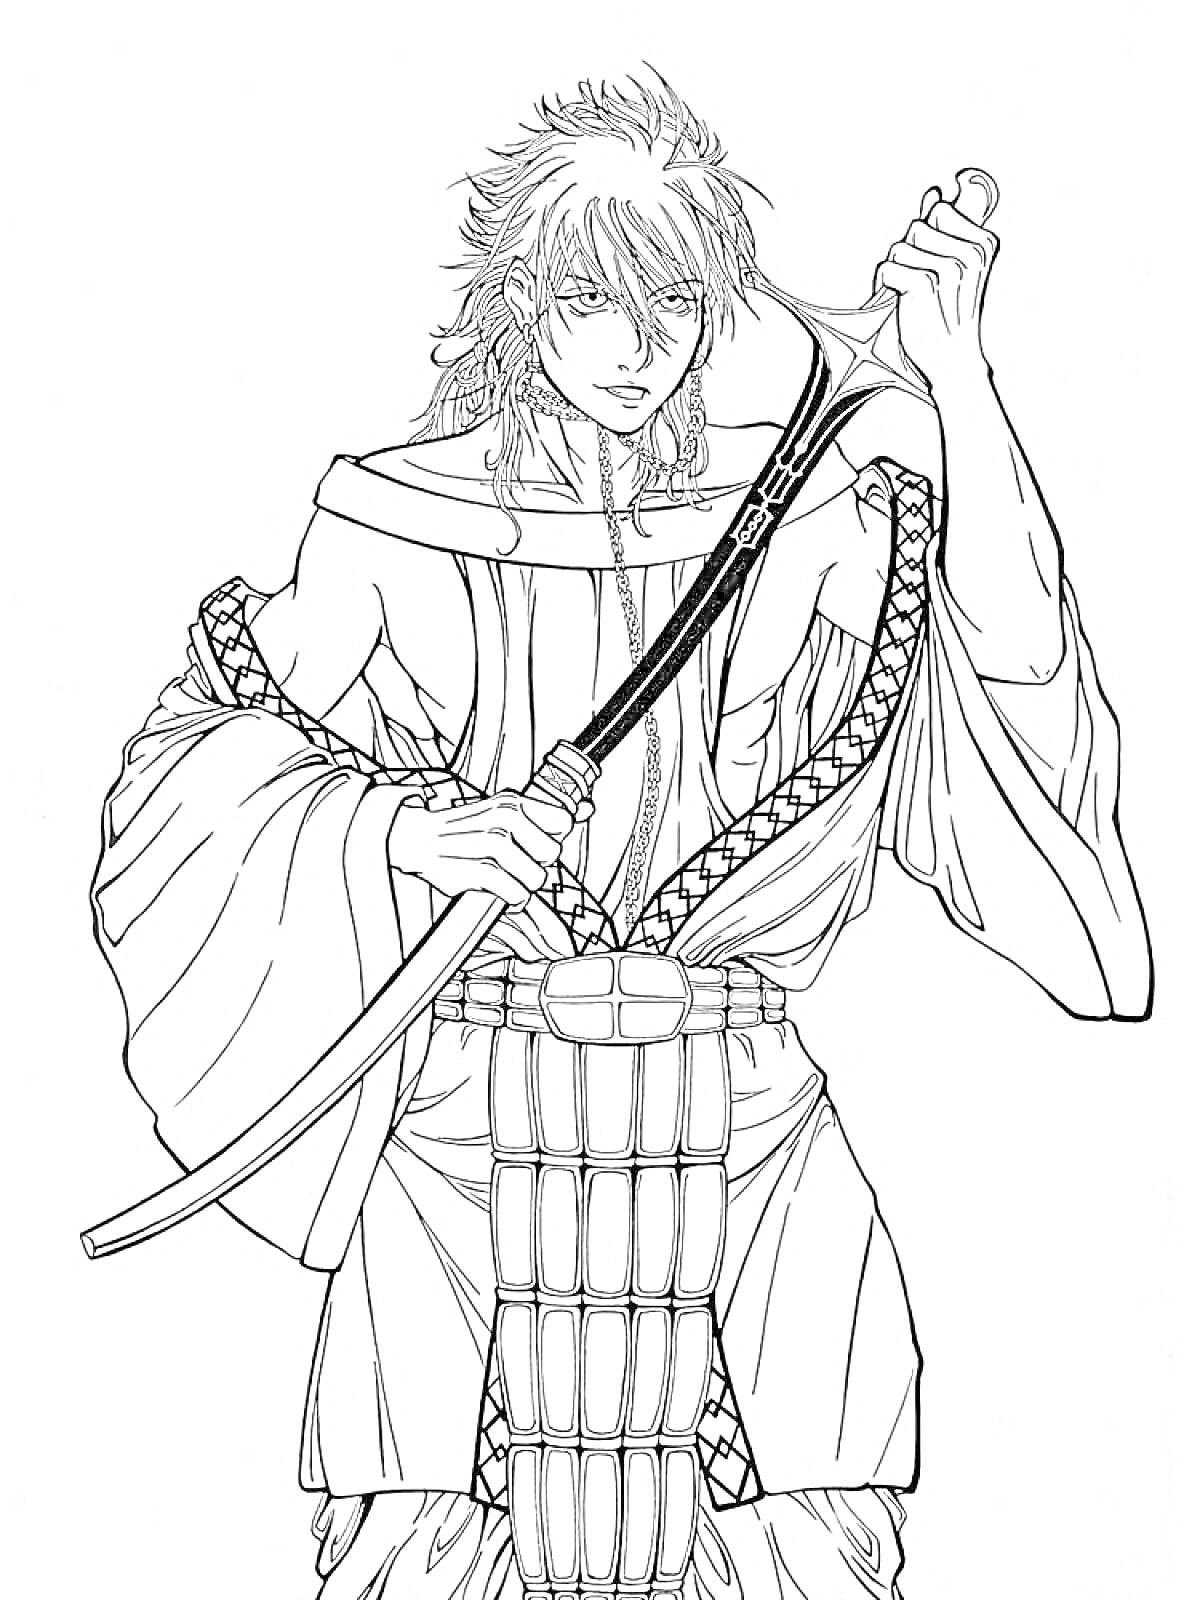 Раскраска Воин с мечом из Гуррен-Лаганн, человек с длинными волосами, одетый в традиционную одежду, держит меч.